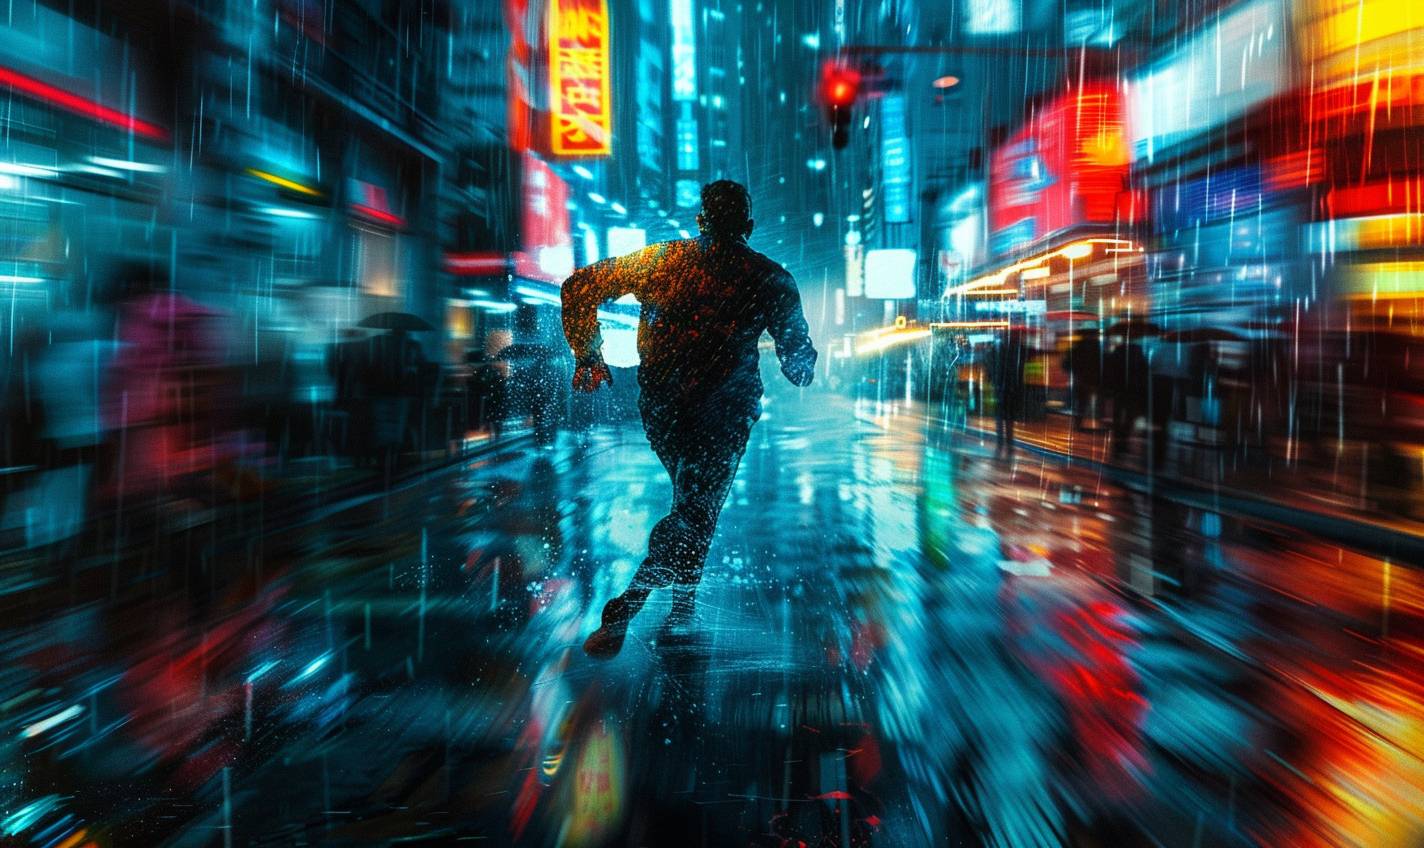 저녁이 되어 비가 적신 도시 거리를 달리는 남자. 비에 묿은 포장마찰로 반사된 네온 라이트가 그의 단호한 표정을 비추고 있다.